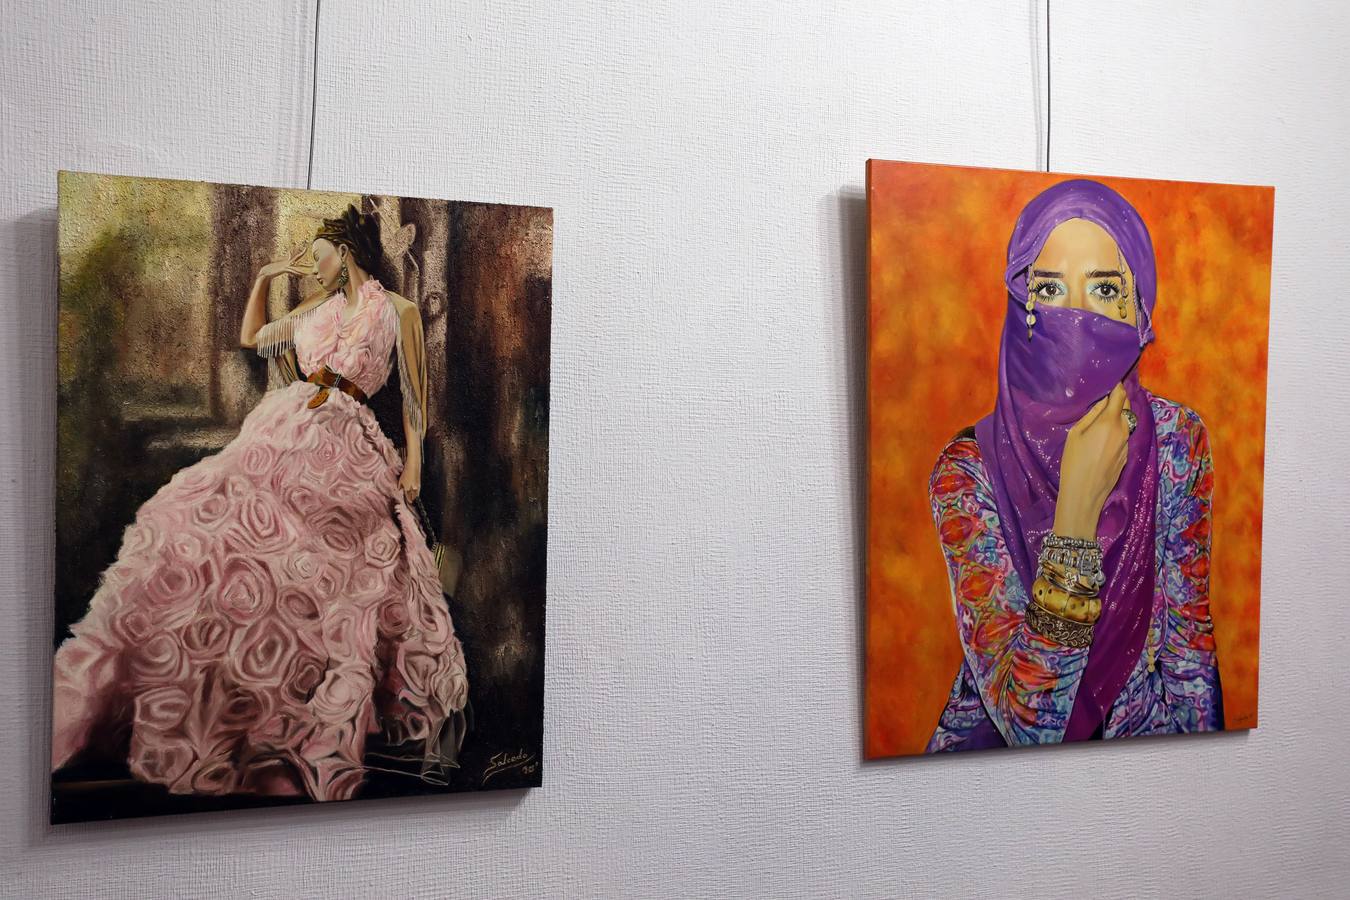 Del 8 al 31 de enero, el Centro Cultural Santo Domingo de Mérida acogerá la exposición 'Miradas del mundo' de la artista Lali Casillas Salcedo. Exposición de pintura, cuadros en óleo, bolígrafo bic y grafito.